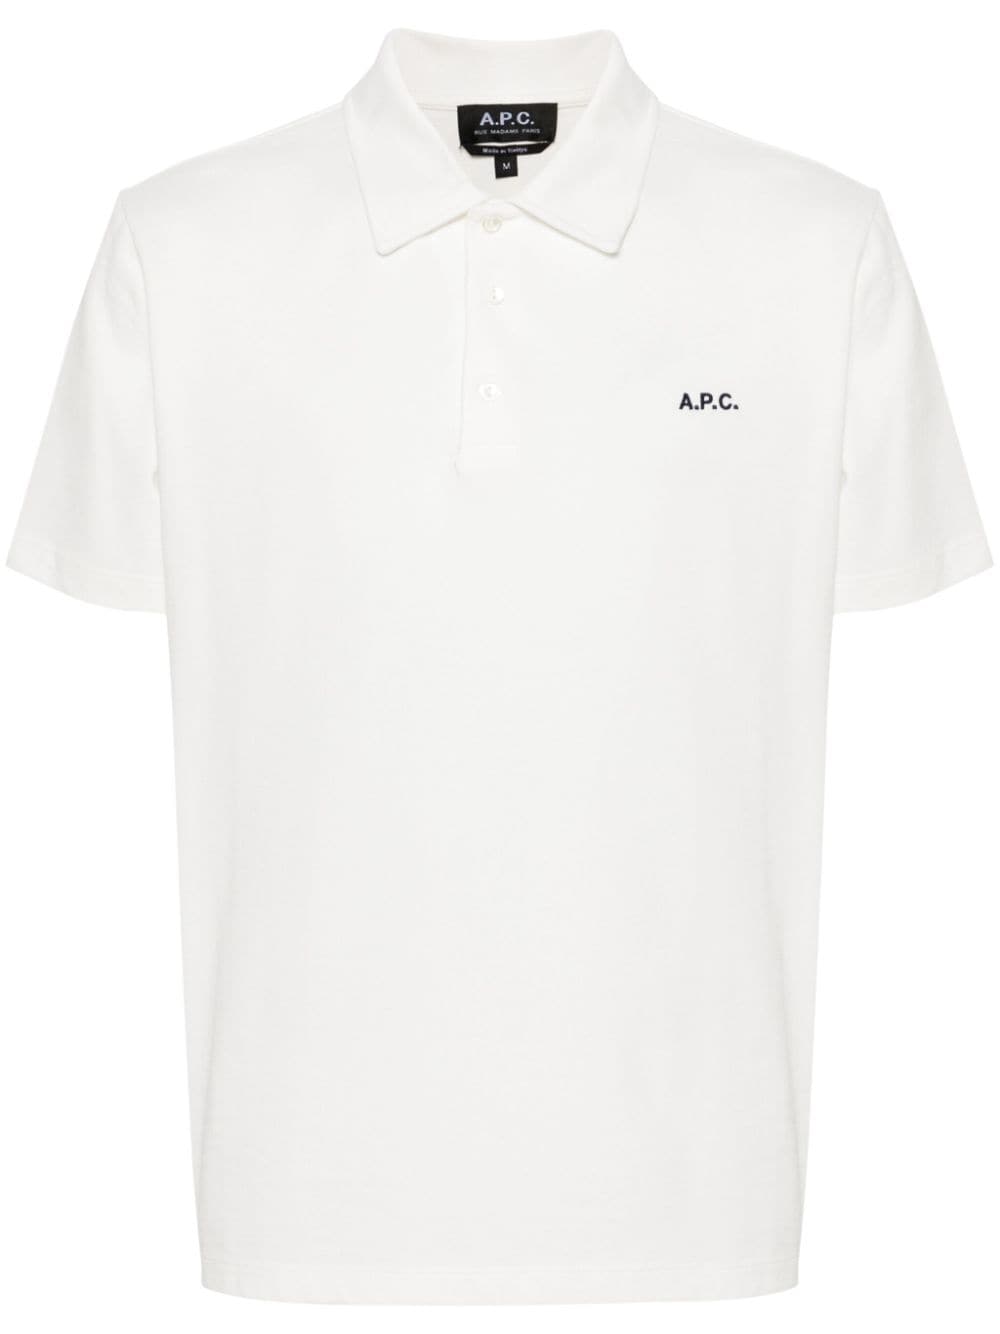 A.P.C. Carter cotton polo shirt - White